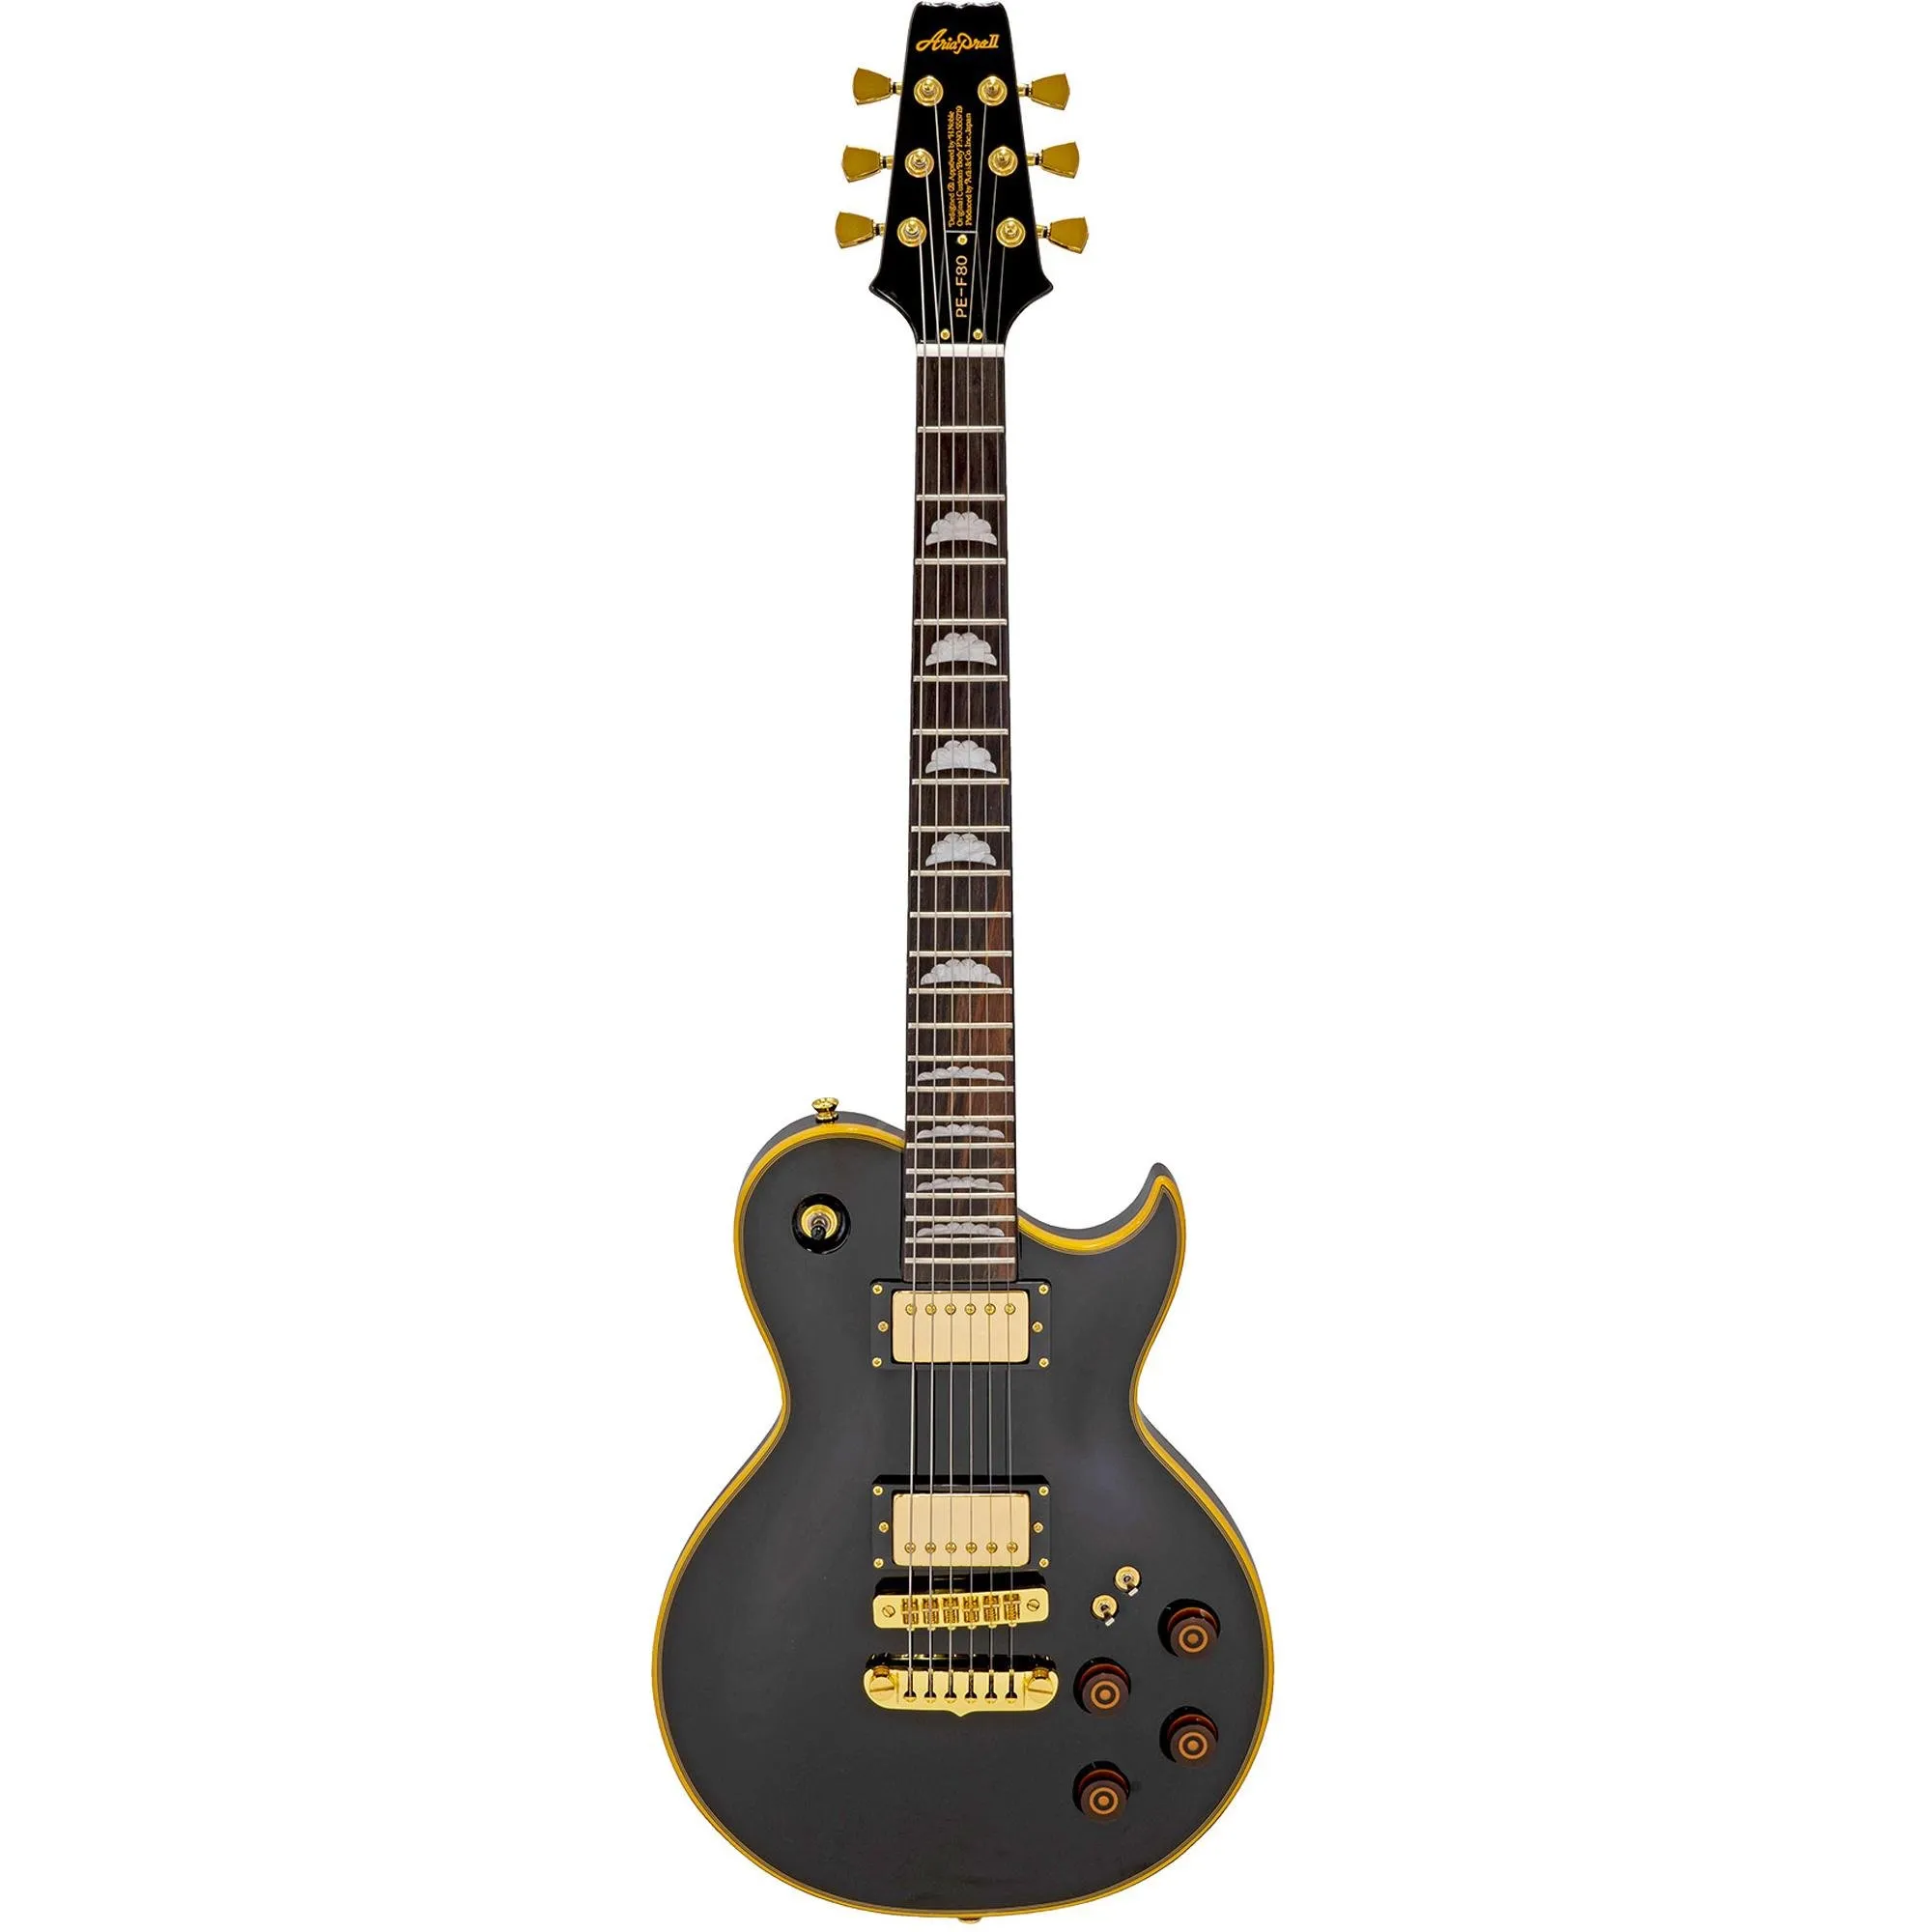 Guitarra Aria Pro II PE-F80 Black Top por 0,00 à vista no boleto/pix ou parcele em até 1x sem juros. Compre na loja Mundomax!